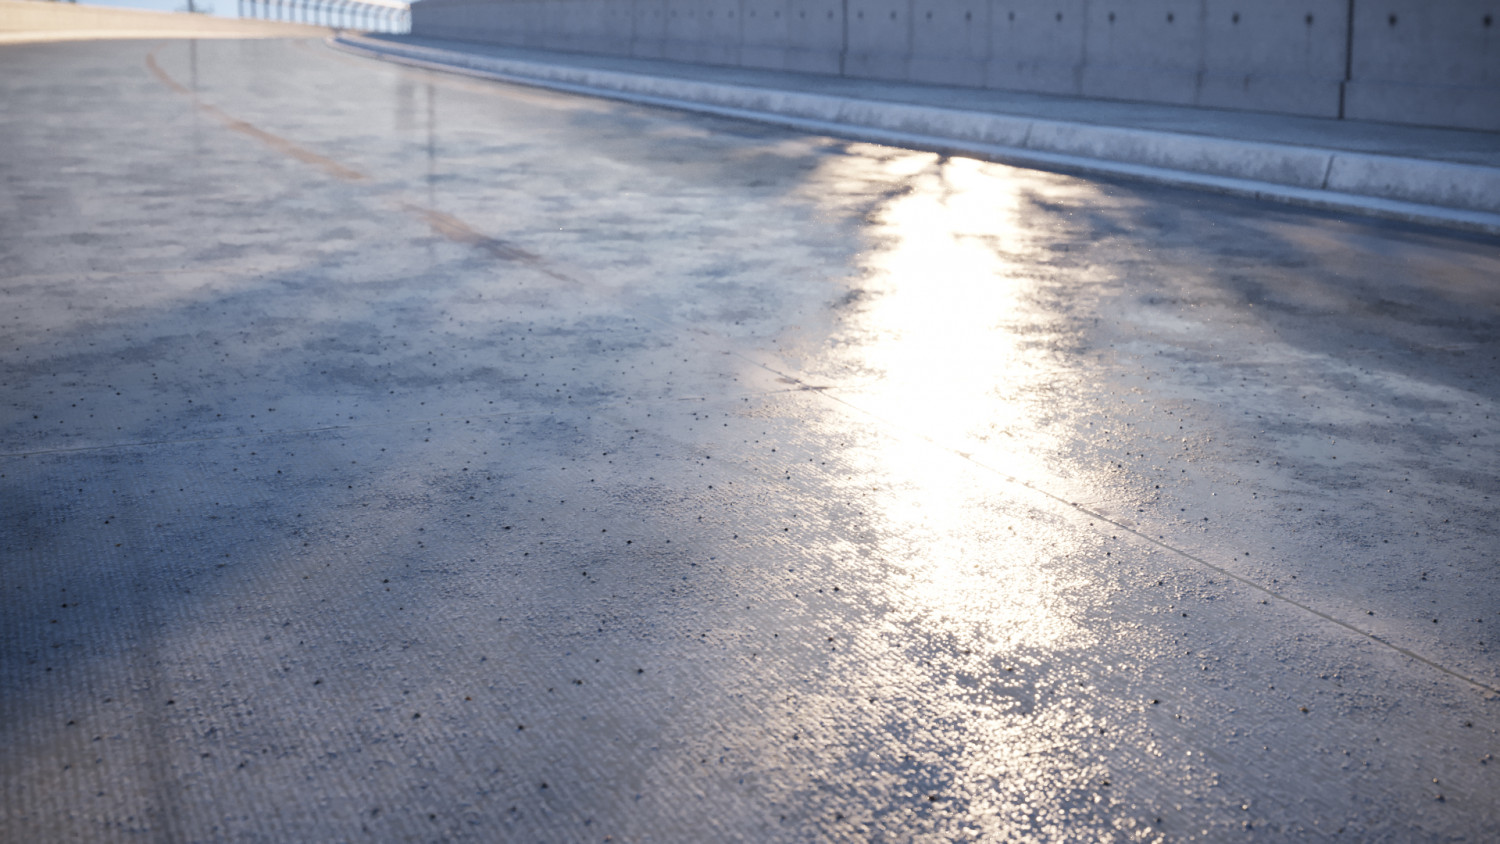 Wet concrete road texture